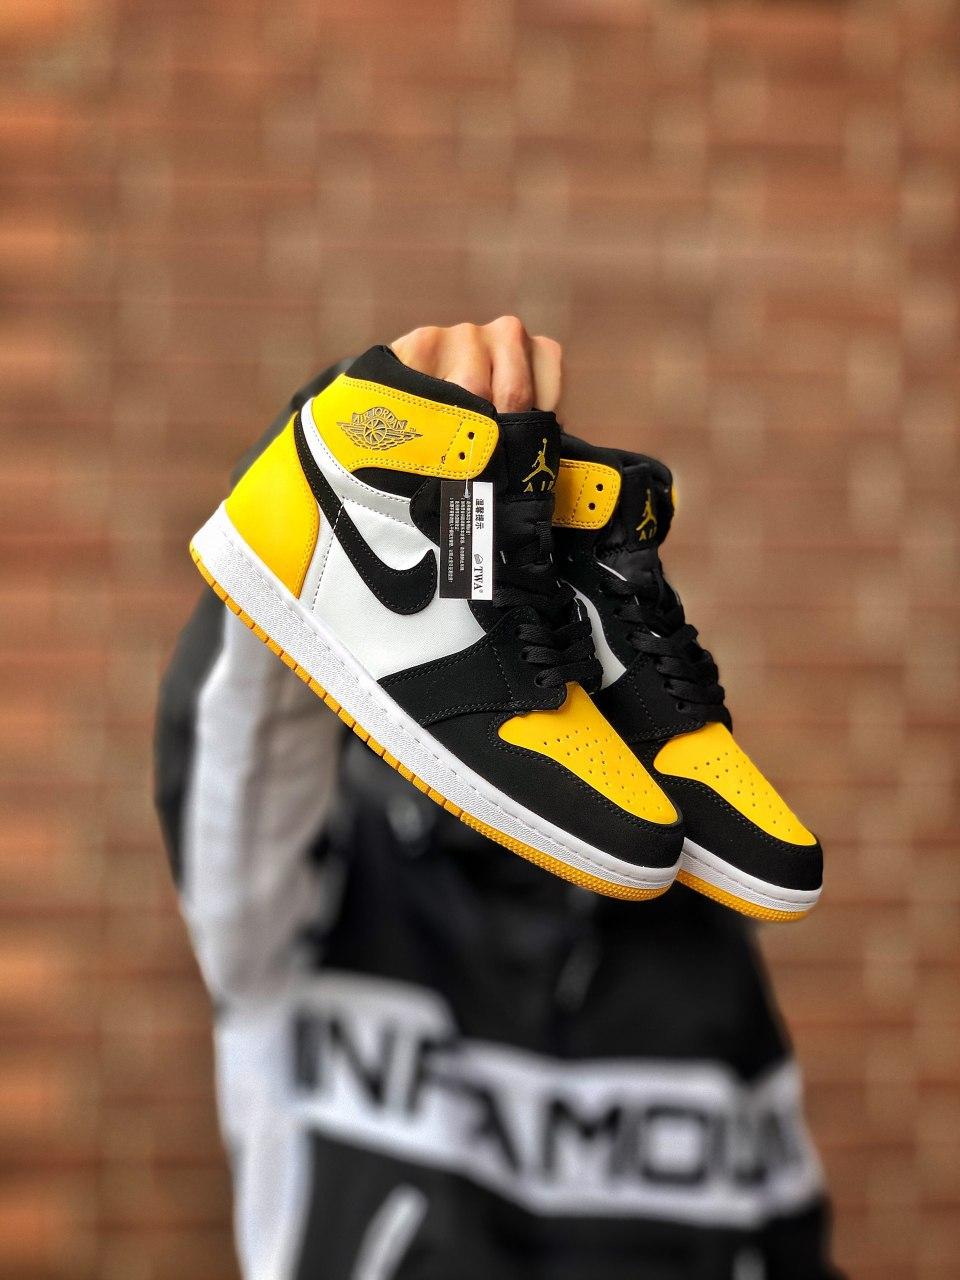 

Женские кроссовки Nike Air Jordan 1 Yellow Black / Найк Аир Джордан 1 Желтые/Черные 40